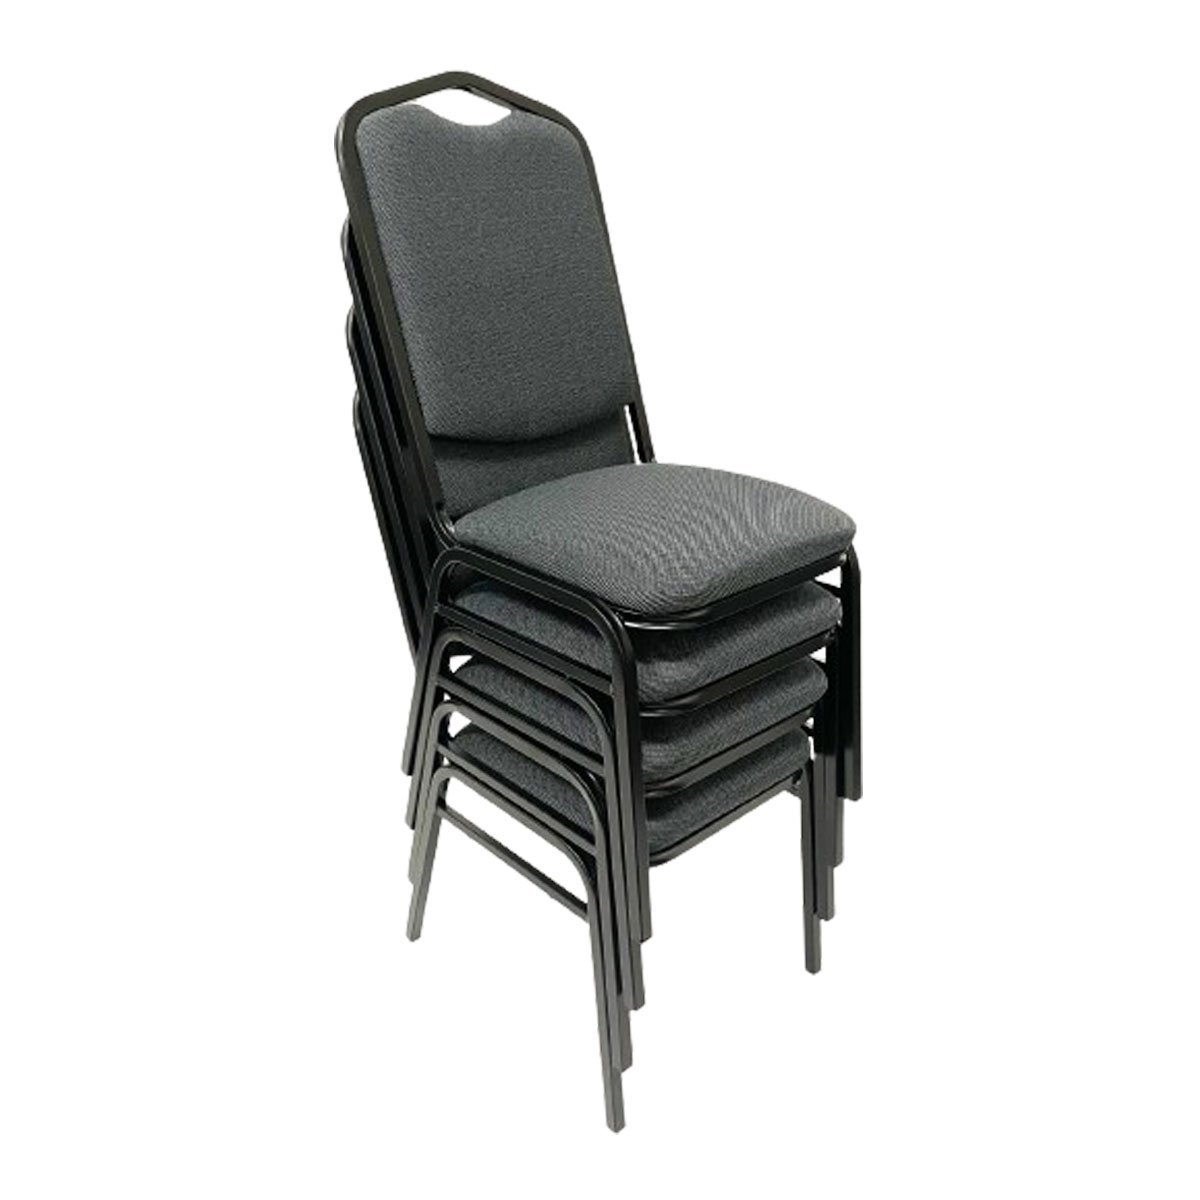 Cadeira para Hotel ou Eventos com Reforço Empilhável Cor Cinza Preto Kit 4 Unidades Poltronas do Sul